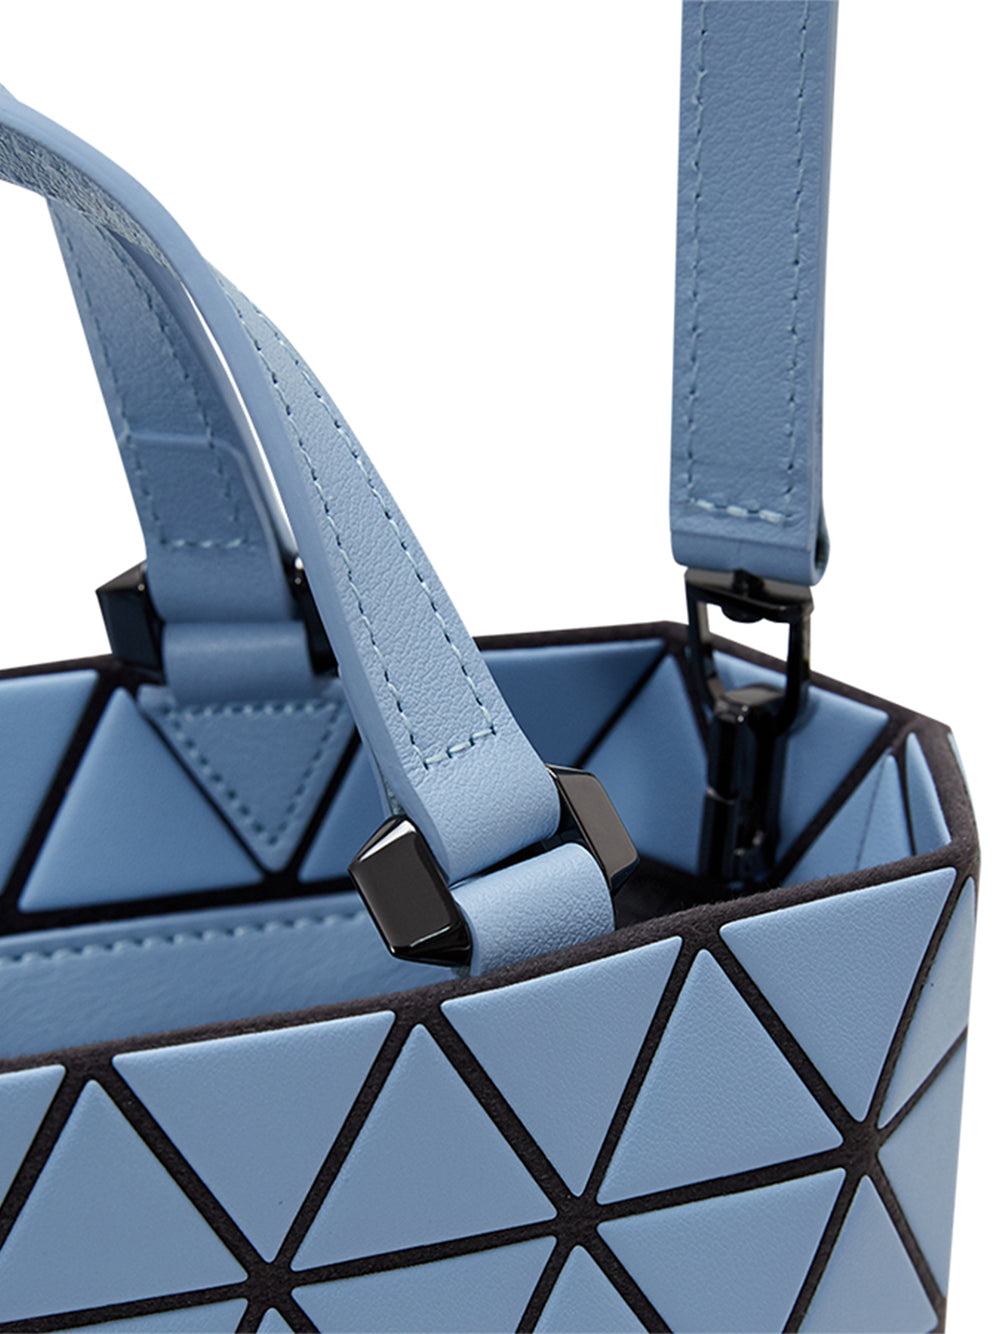 CRYSTAL MATTE Handbag (Mini) (Ice Blue)